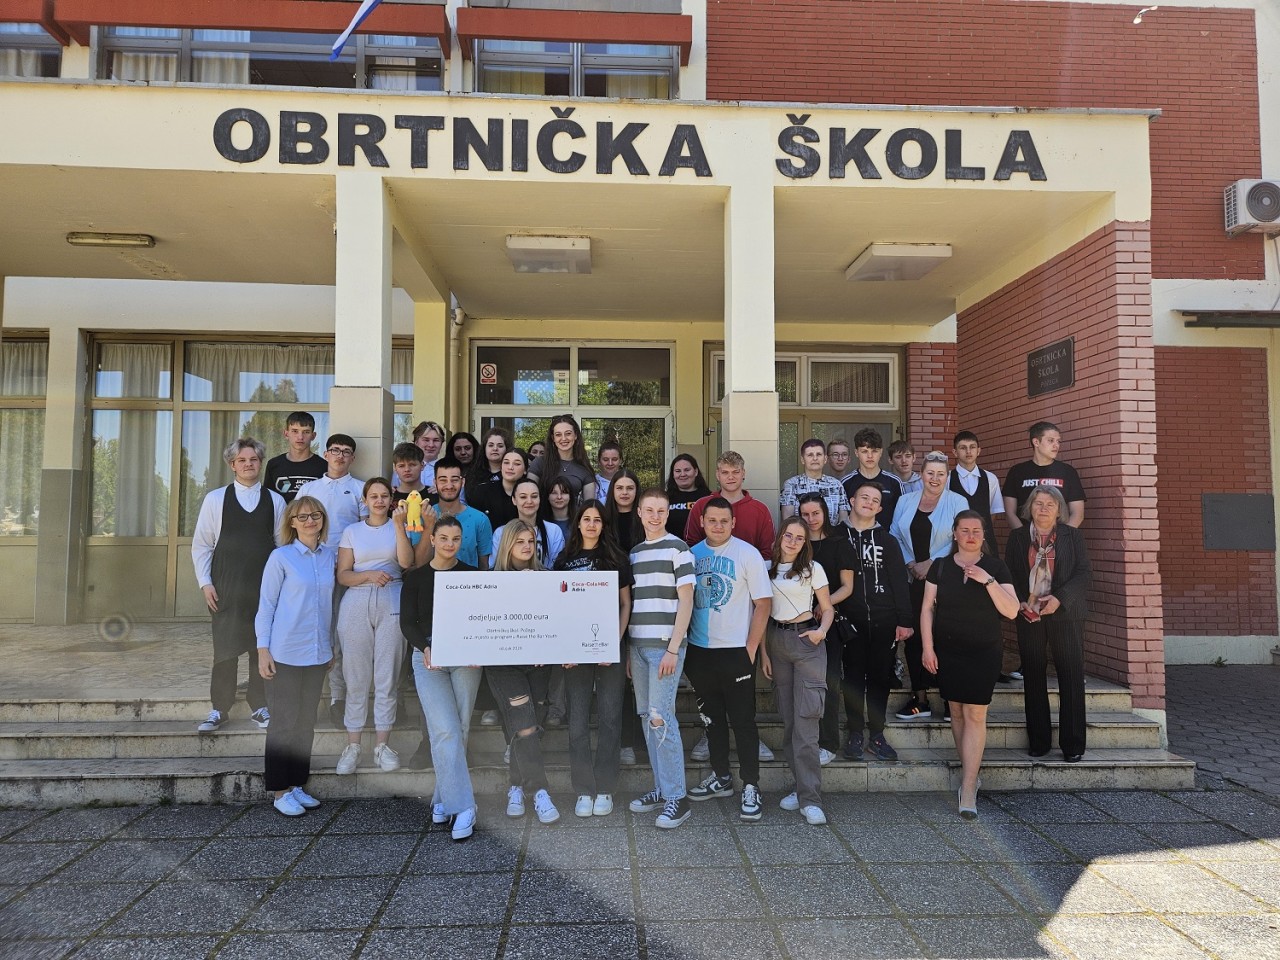 Obrtničkoj školi Požega uručena nagrada od 3.000 eura i održano masterclass predavanje